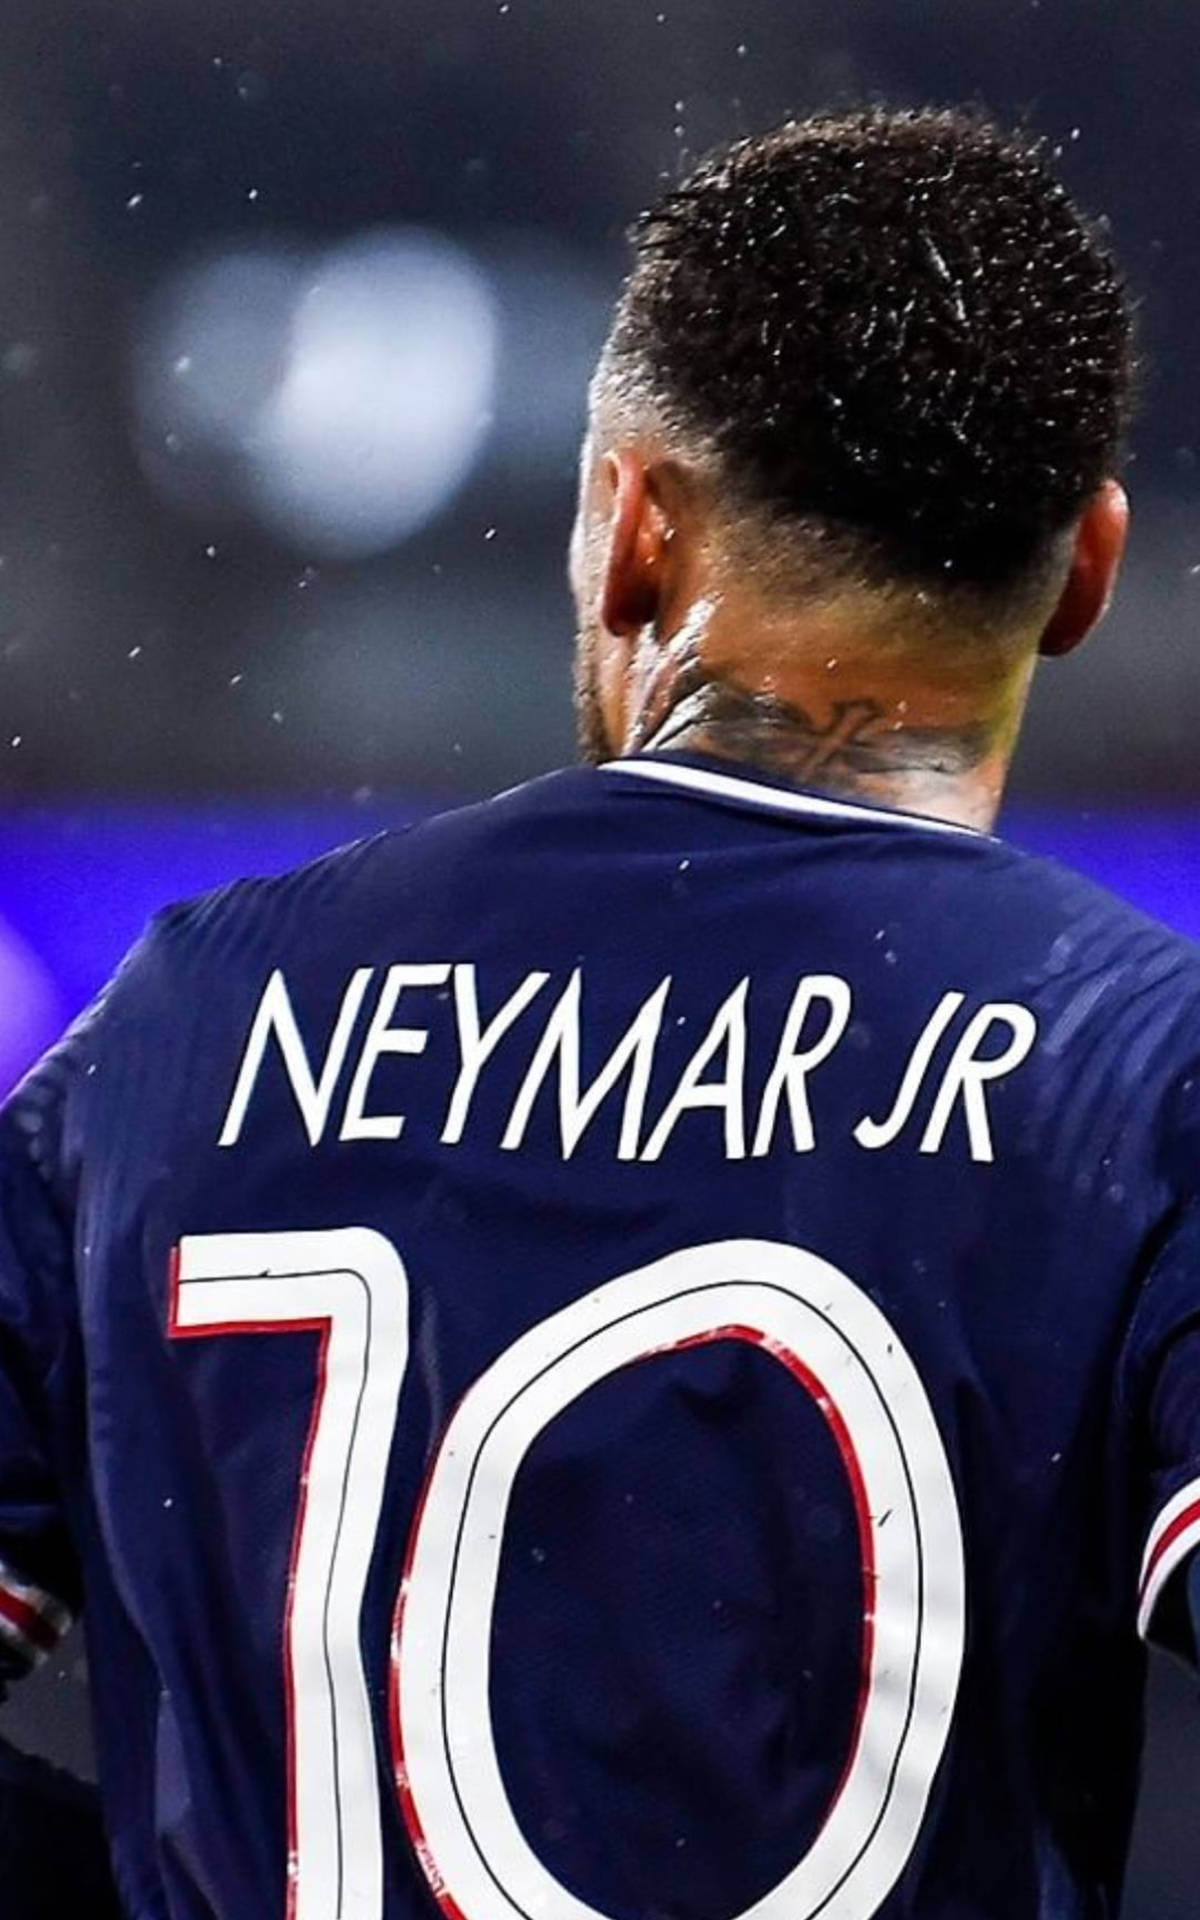 neymar jr jersey cheap